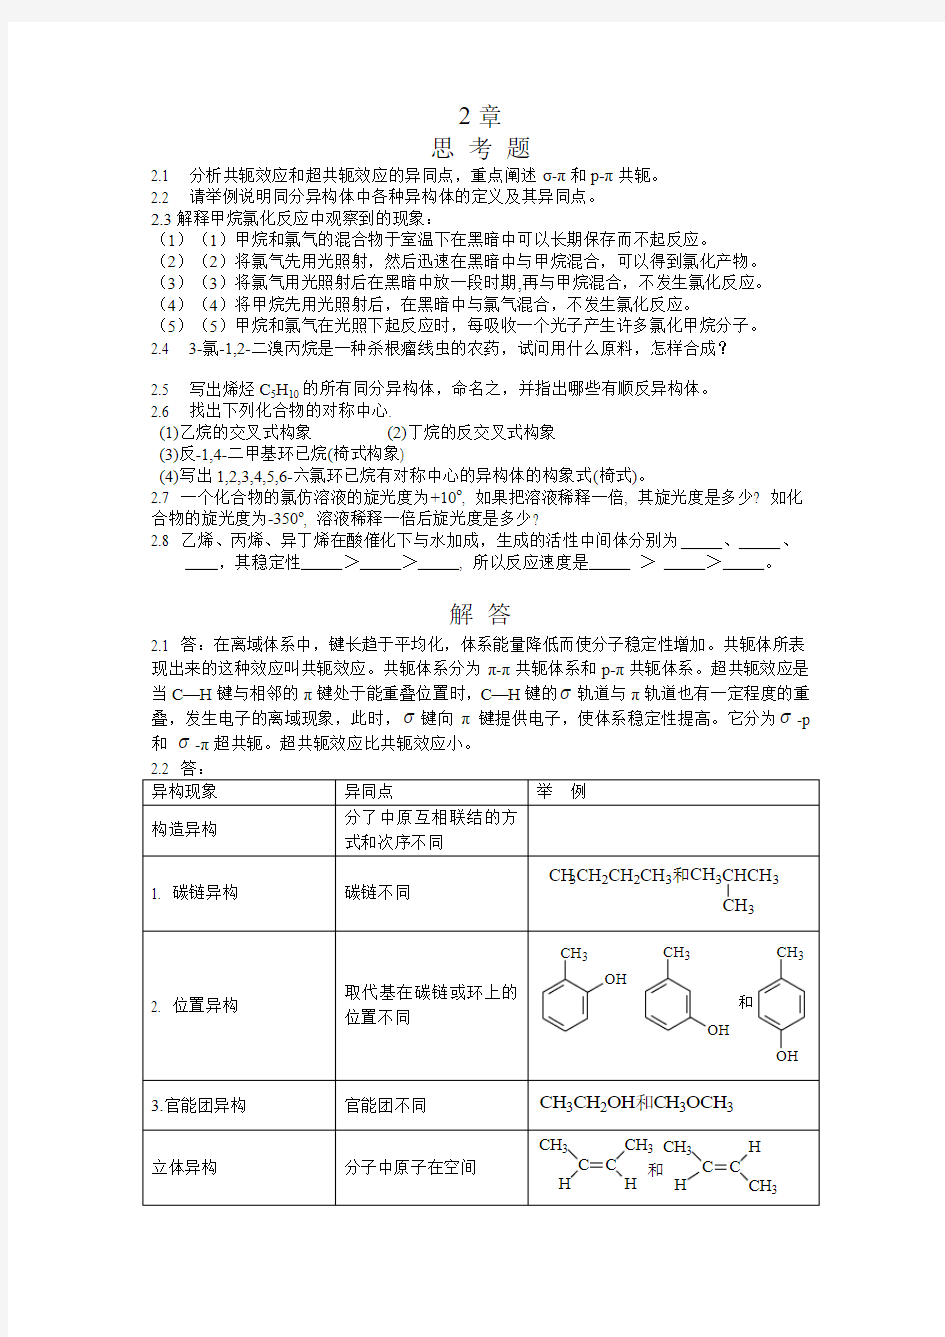 湖南大学有机化学-课后例题习题-第二章